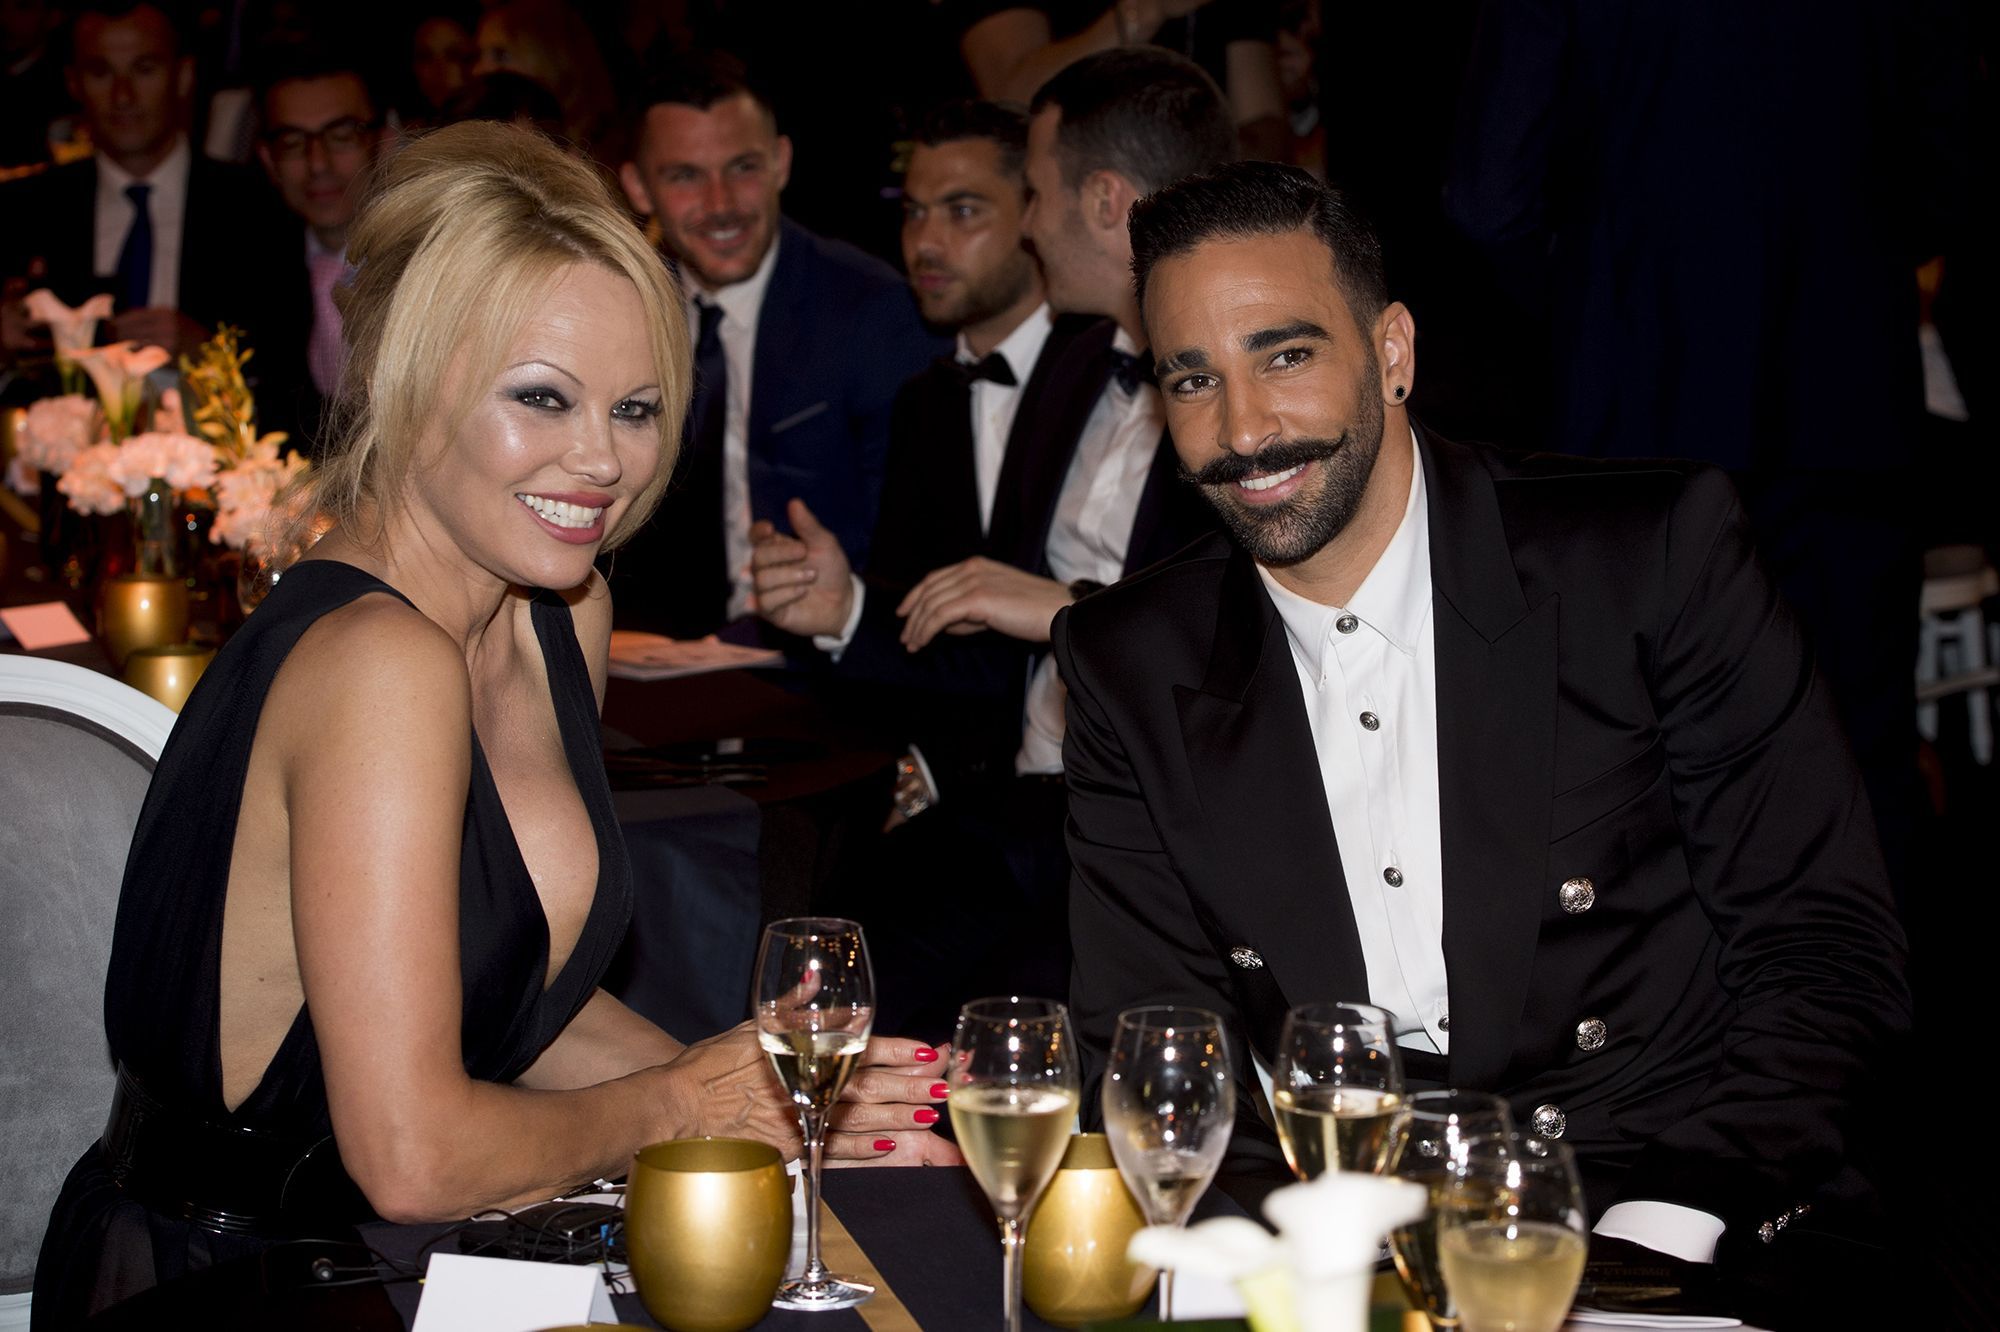 Adil Rami sur sa rupture avec Pamela Anderson : "Je pourrais la jouer sale, balancer nos sextapes"